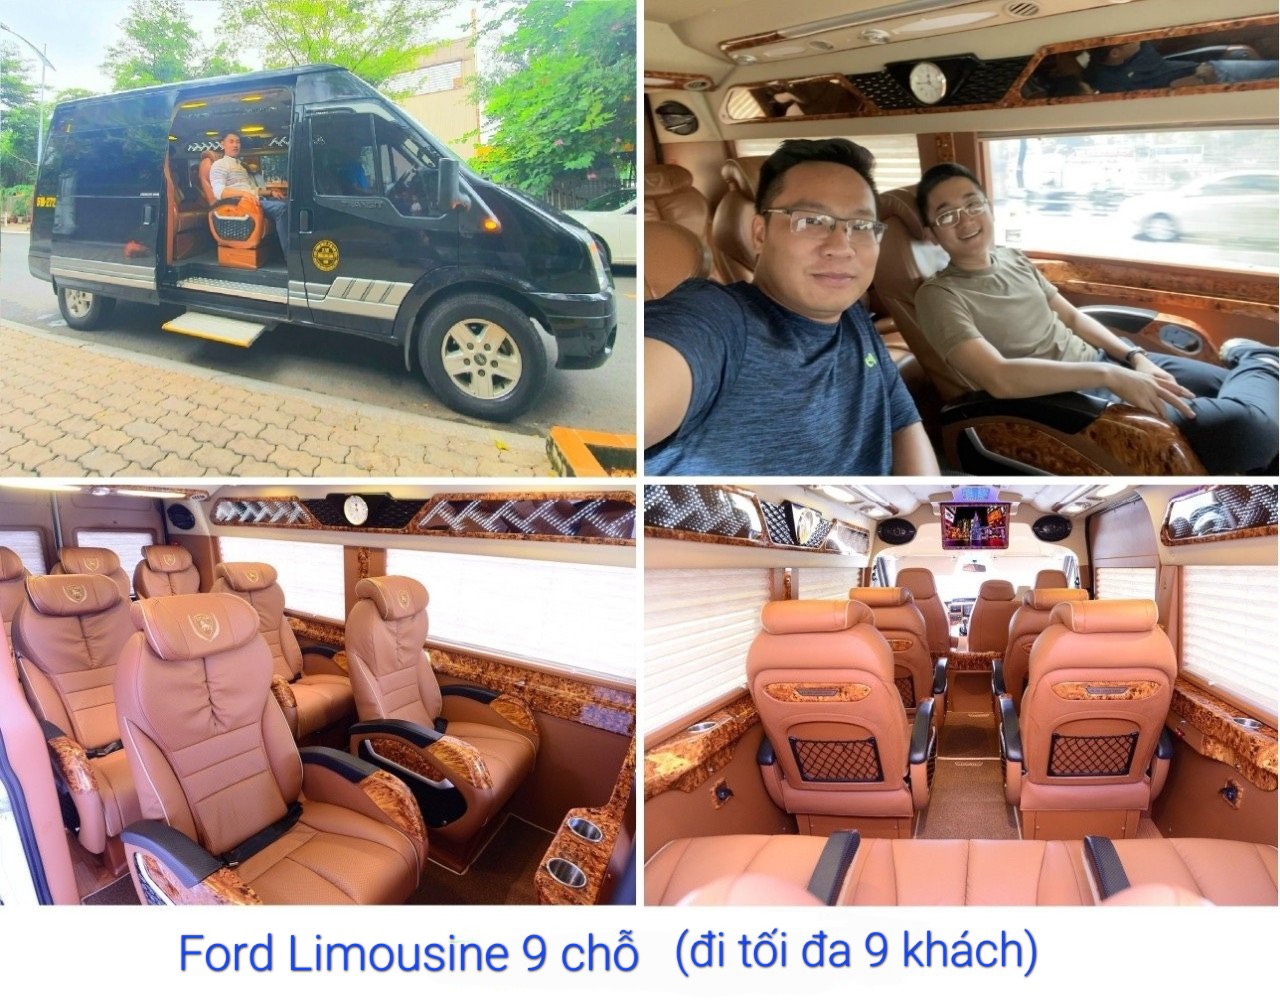 Ford limousine 9 cho di toi da 9 khach.jpg (345 KB)